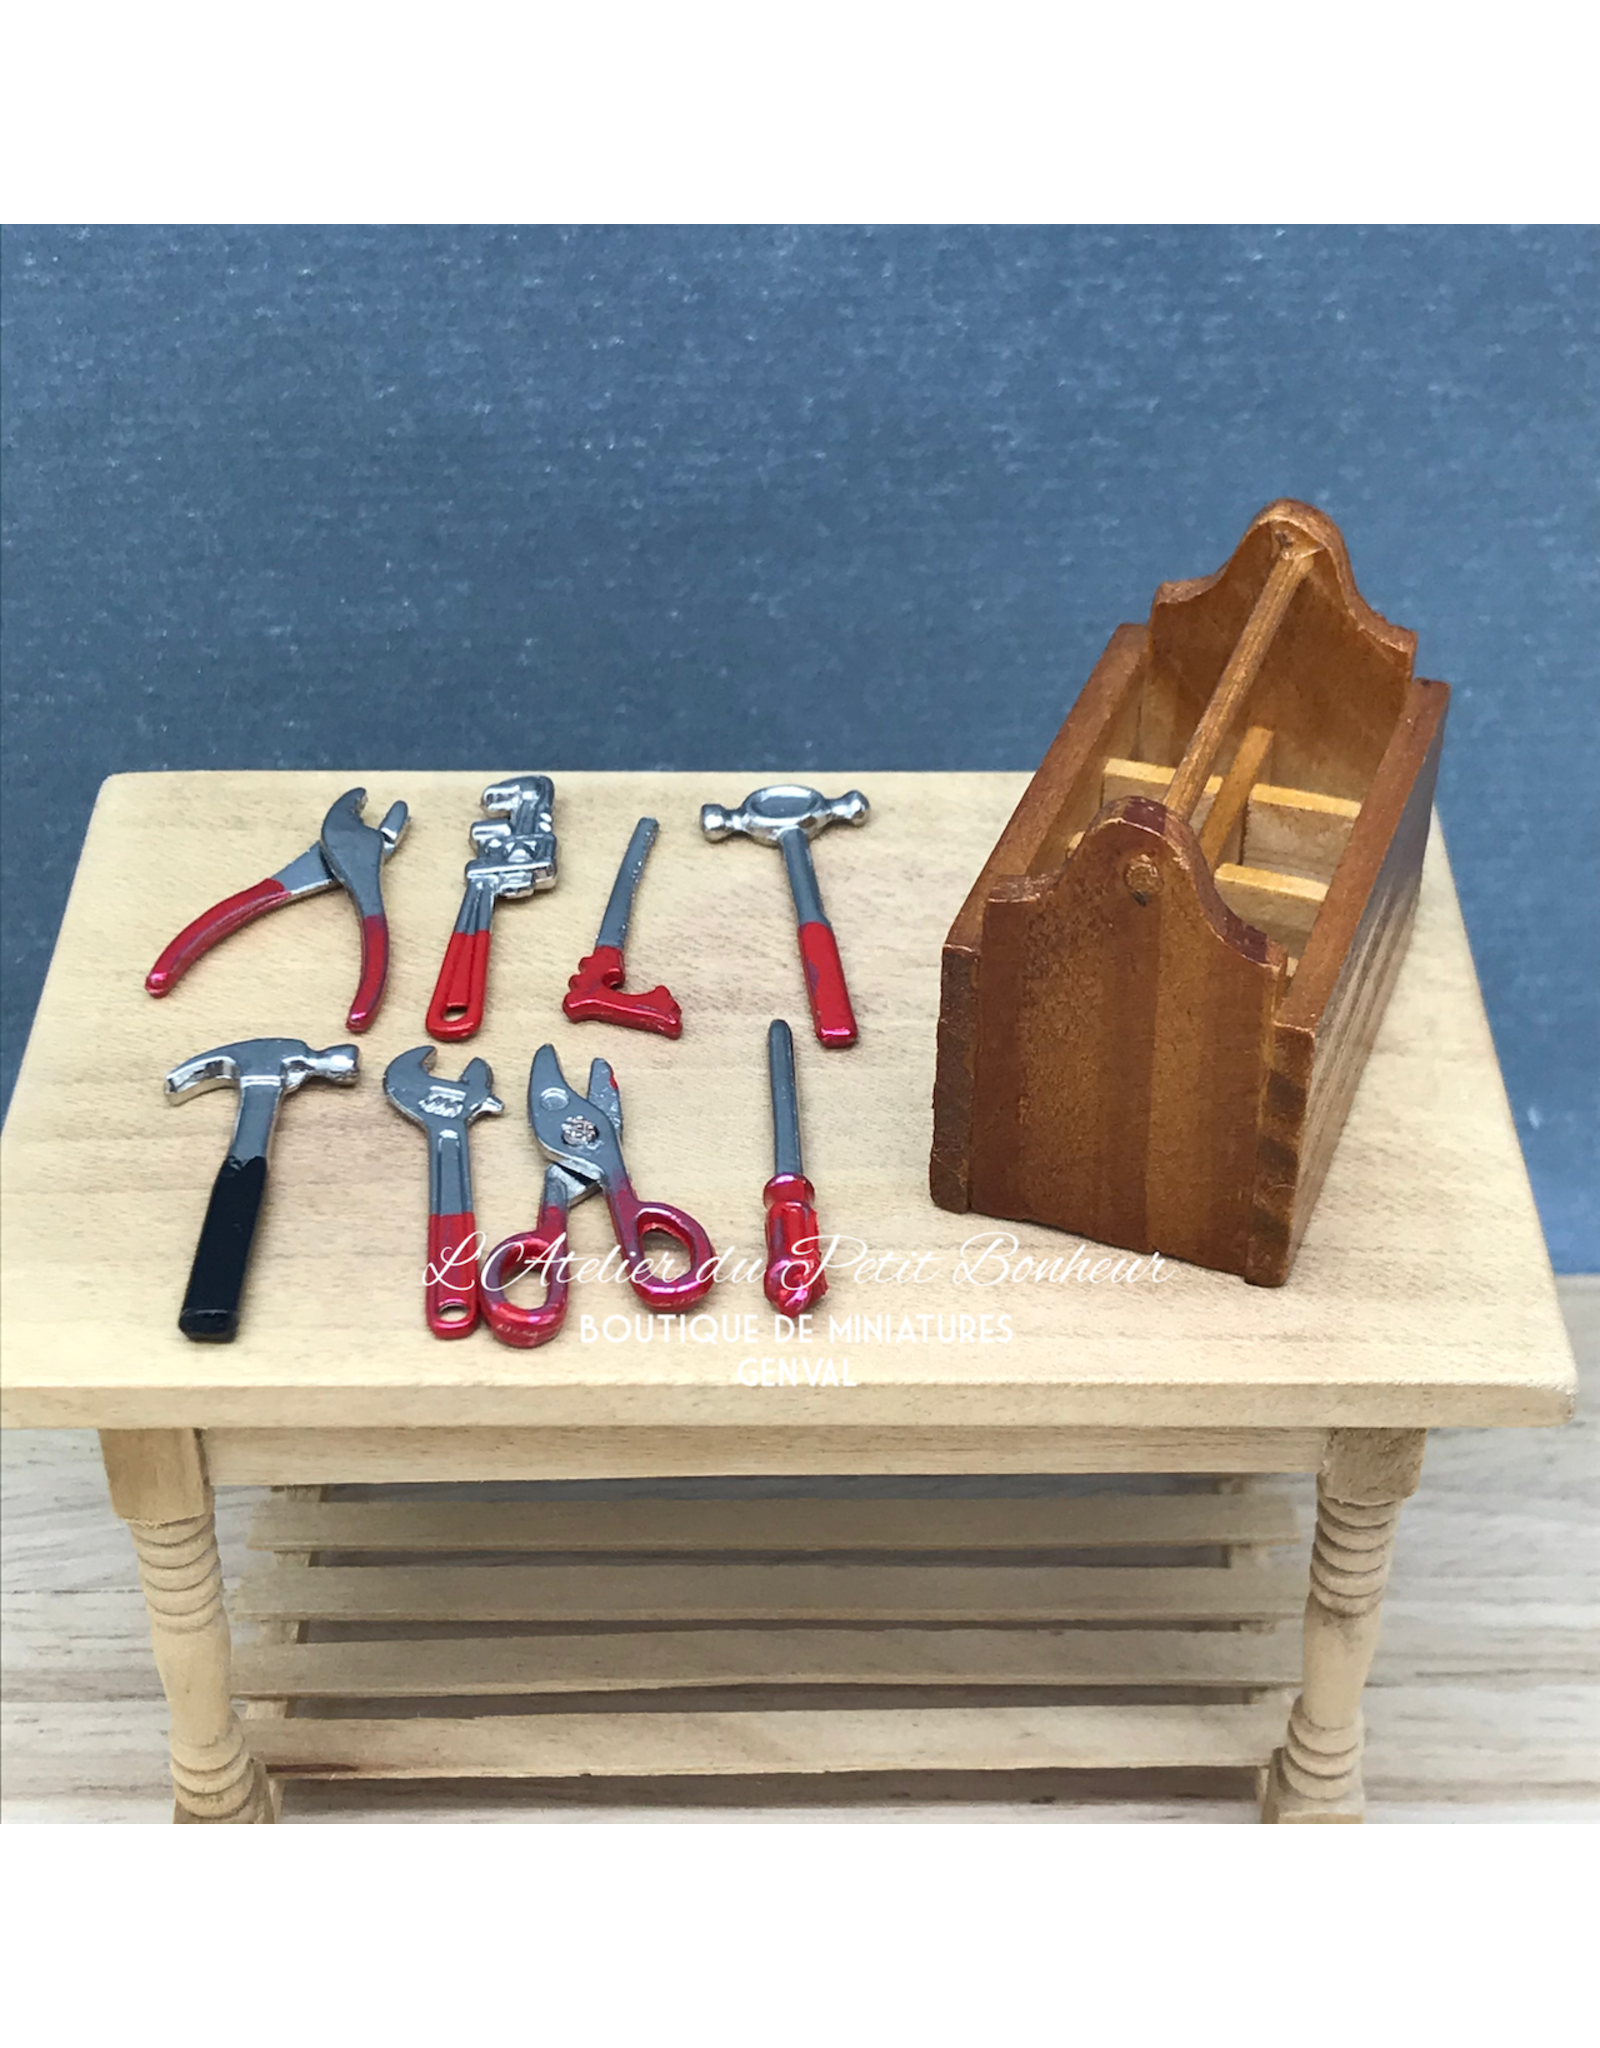 Boîte à outils miniature 1:12